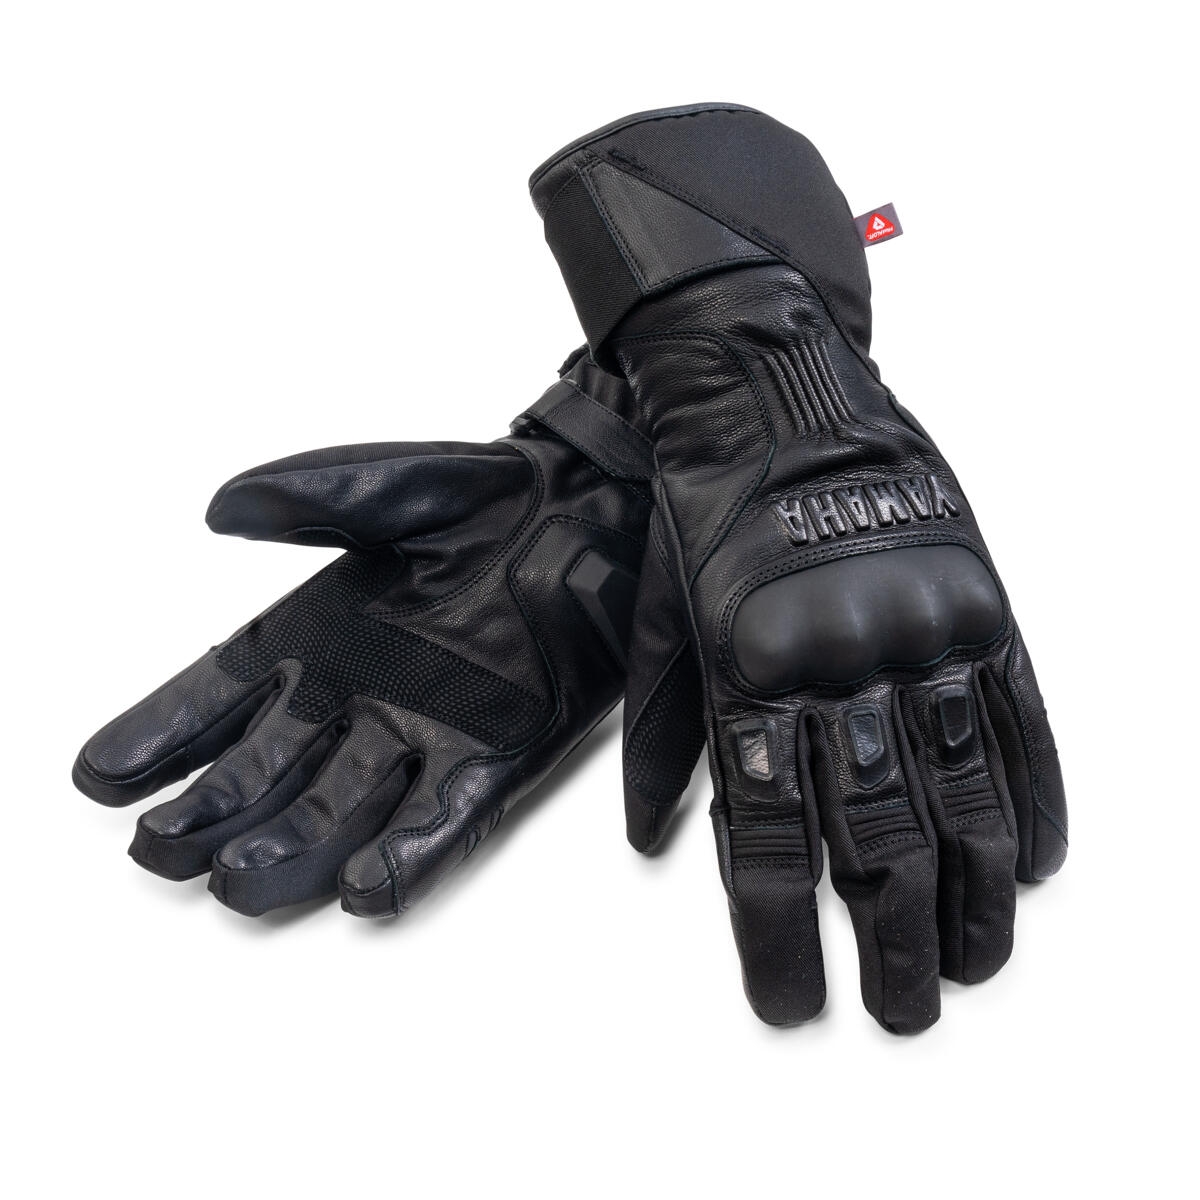 Moto, grand froid et confort, part. 1 : Bien choisir ses gants moto d'hiver  - Moto-Station